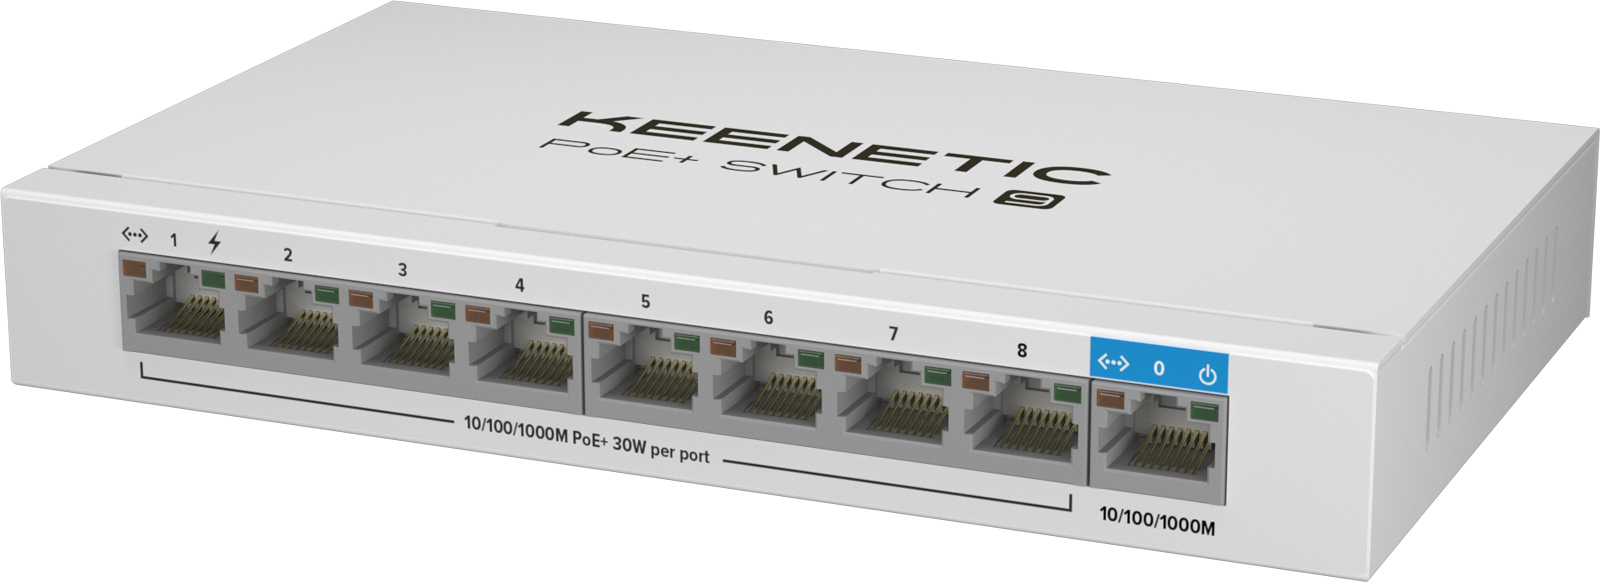 Keenetic представила компактные 1GbE-коммутаторы с поддержкой PoE+